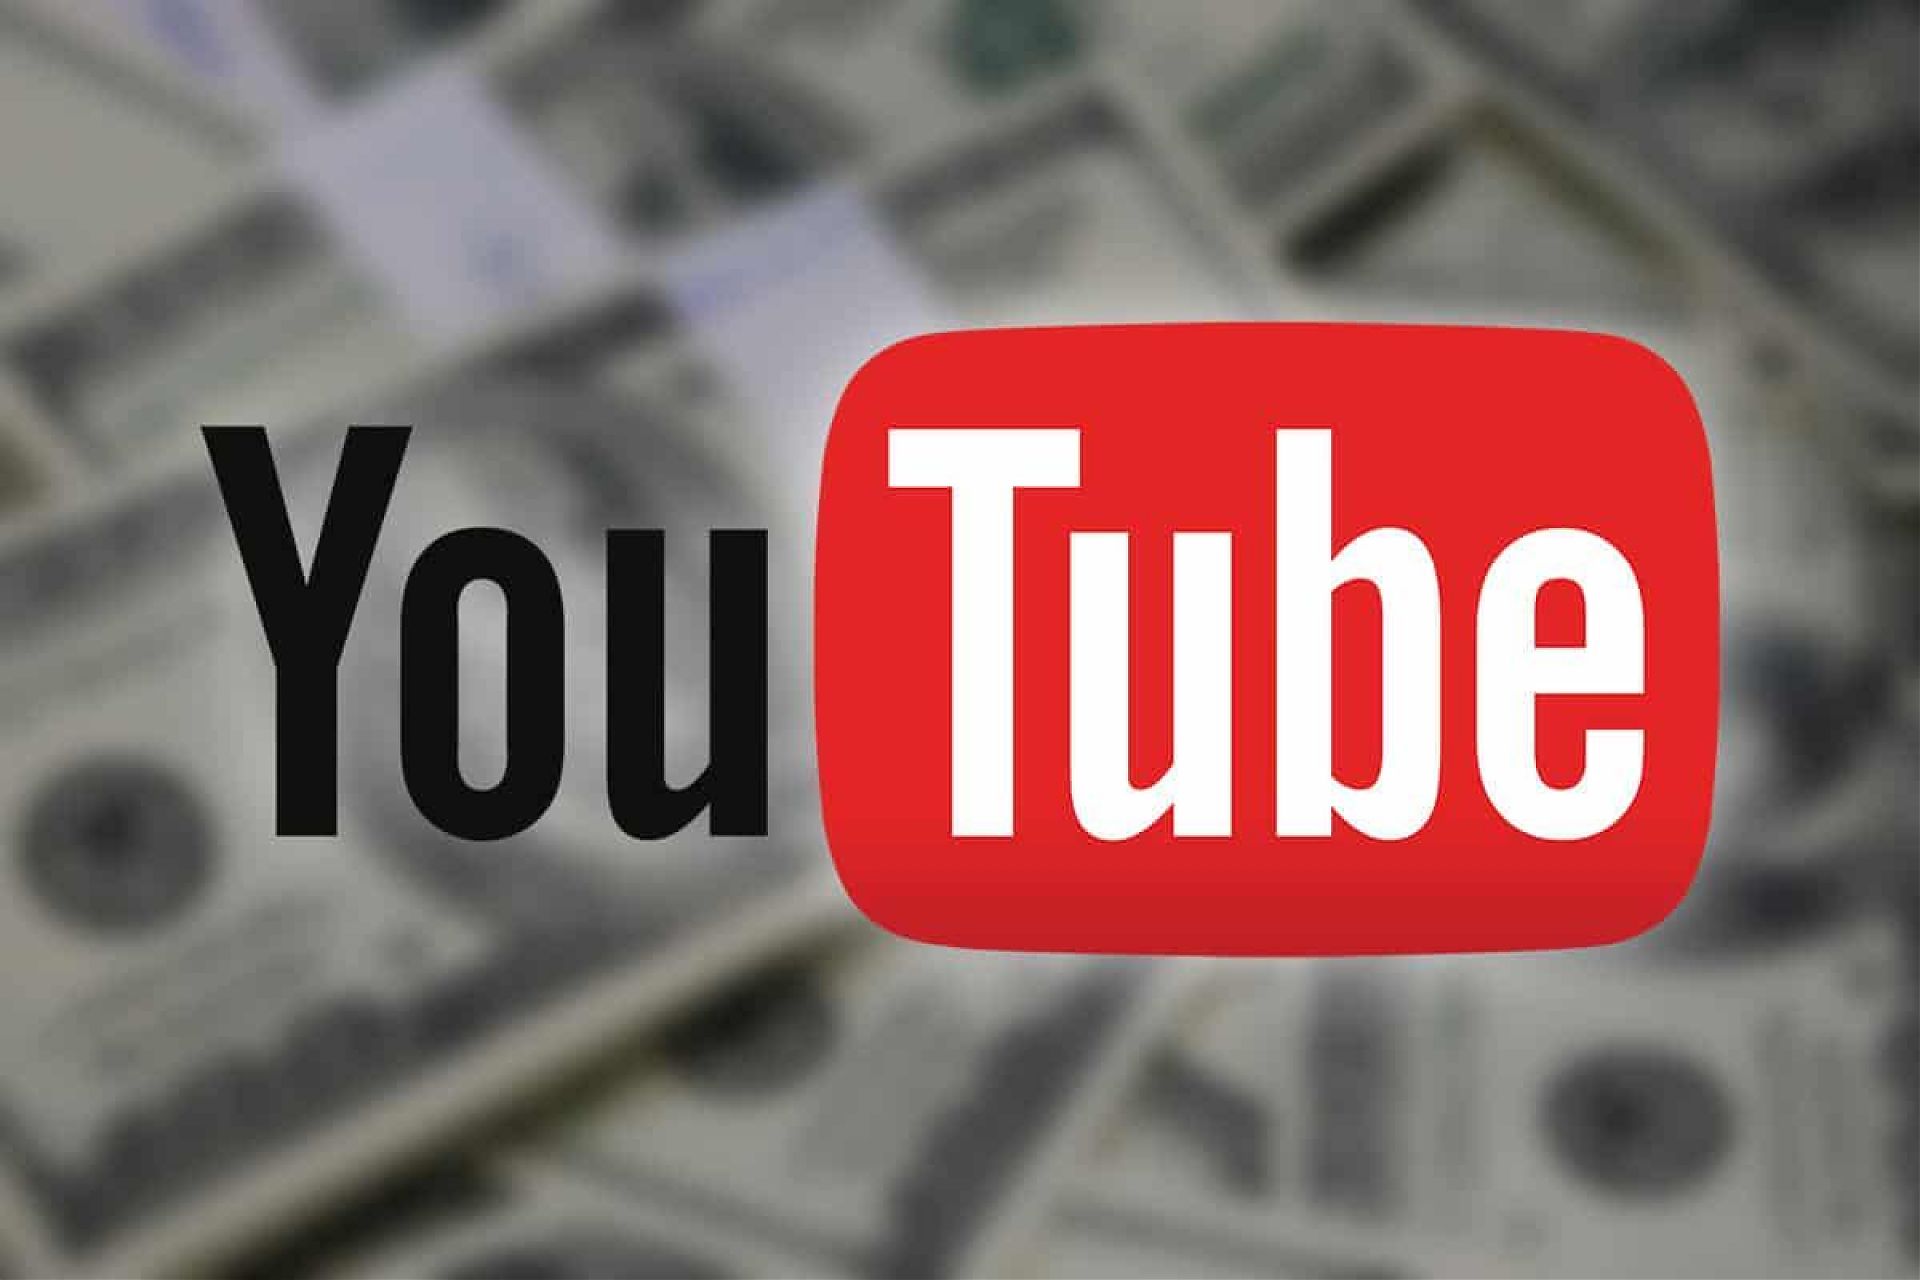 Сколько стоит 1 подписчик в Ютубе и сколько YouTube платит за подписчиков